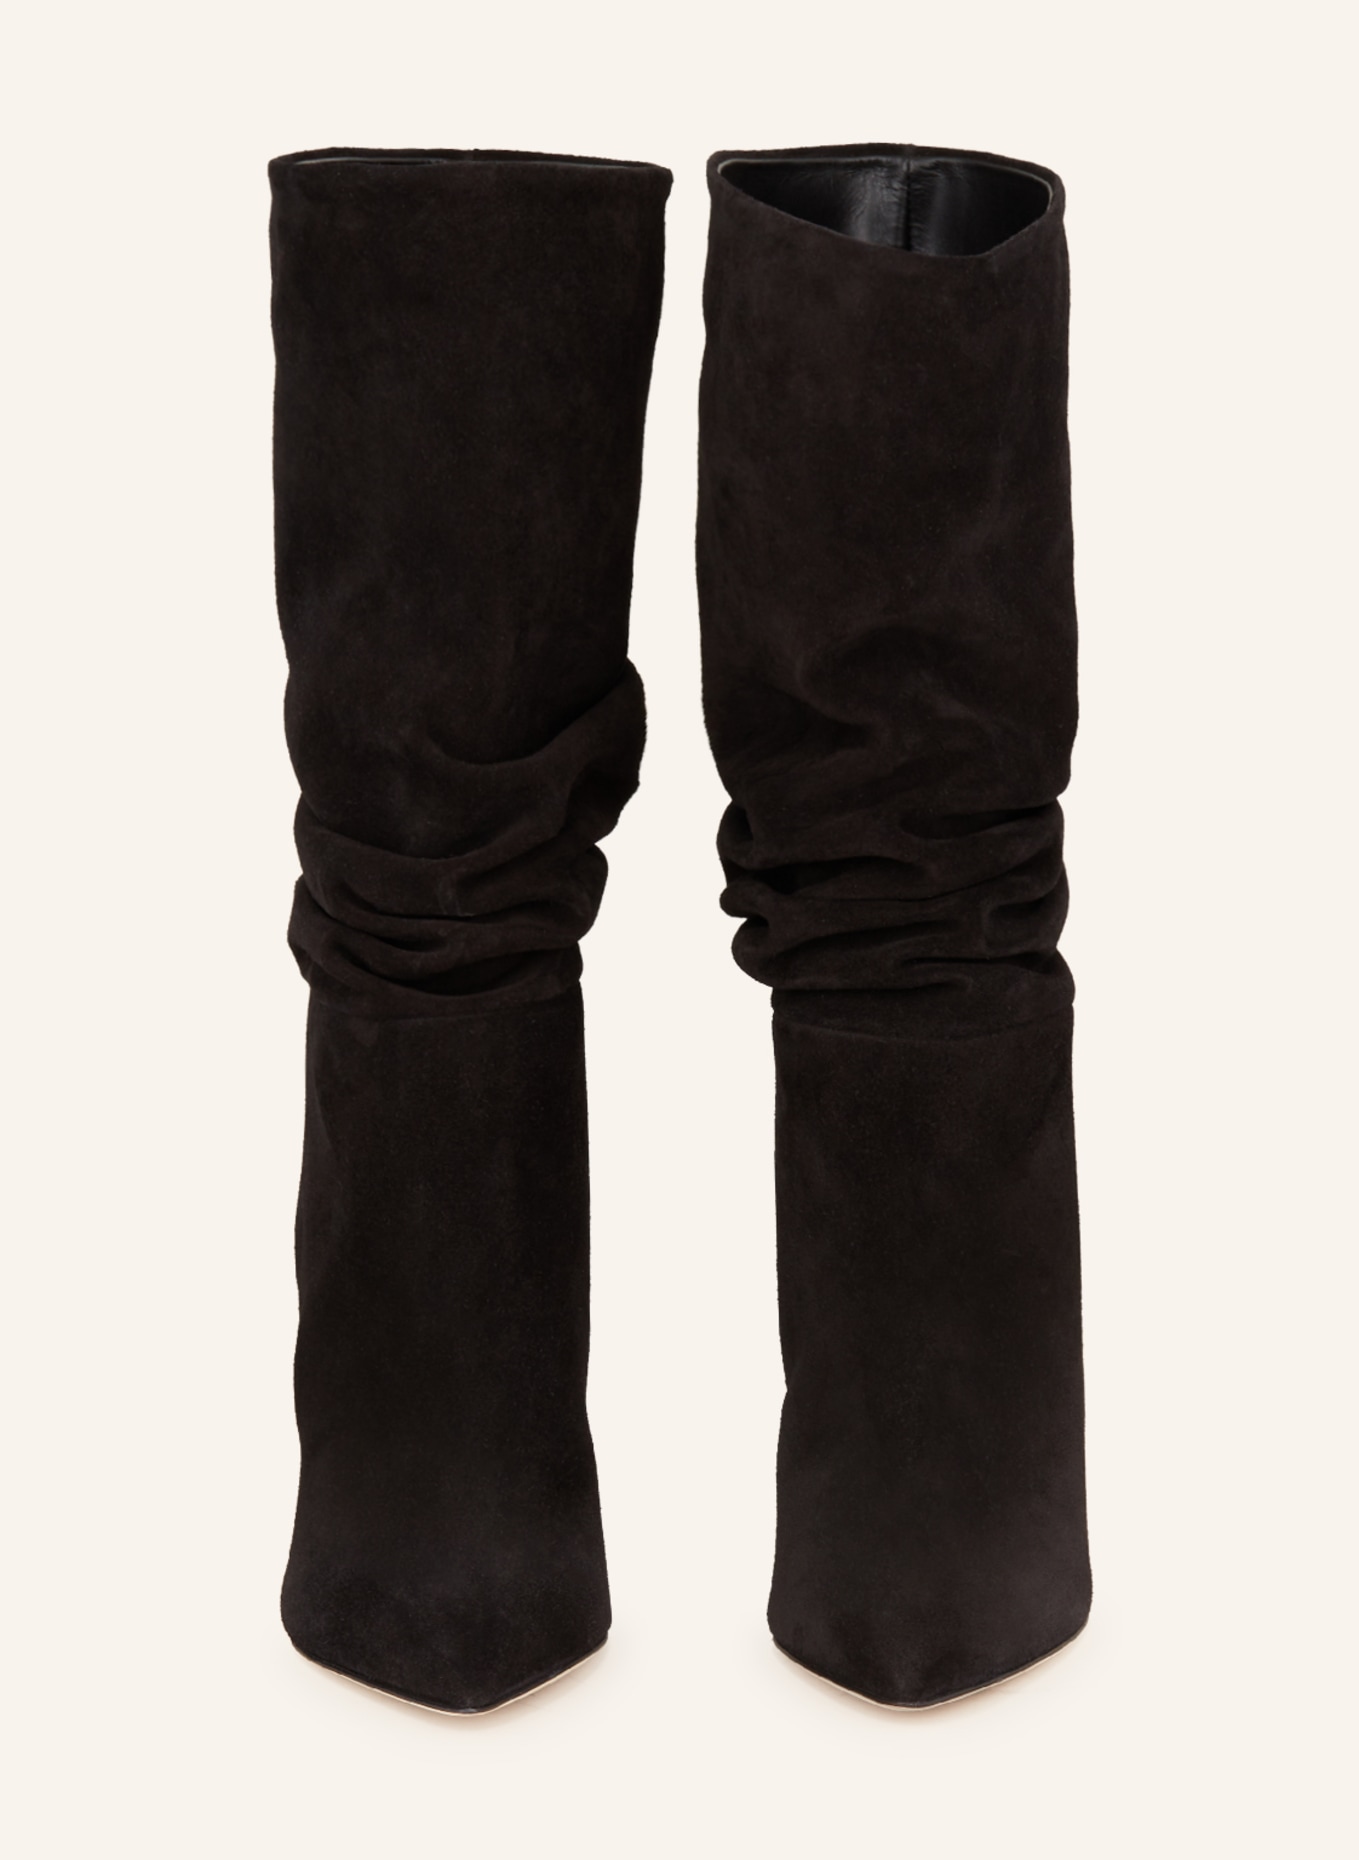 PARIS TEXAS Boots, Color: BLACK (Image 3)